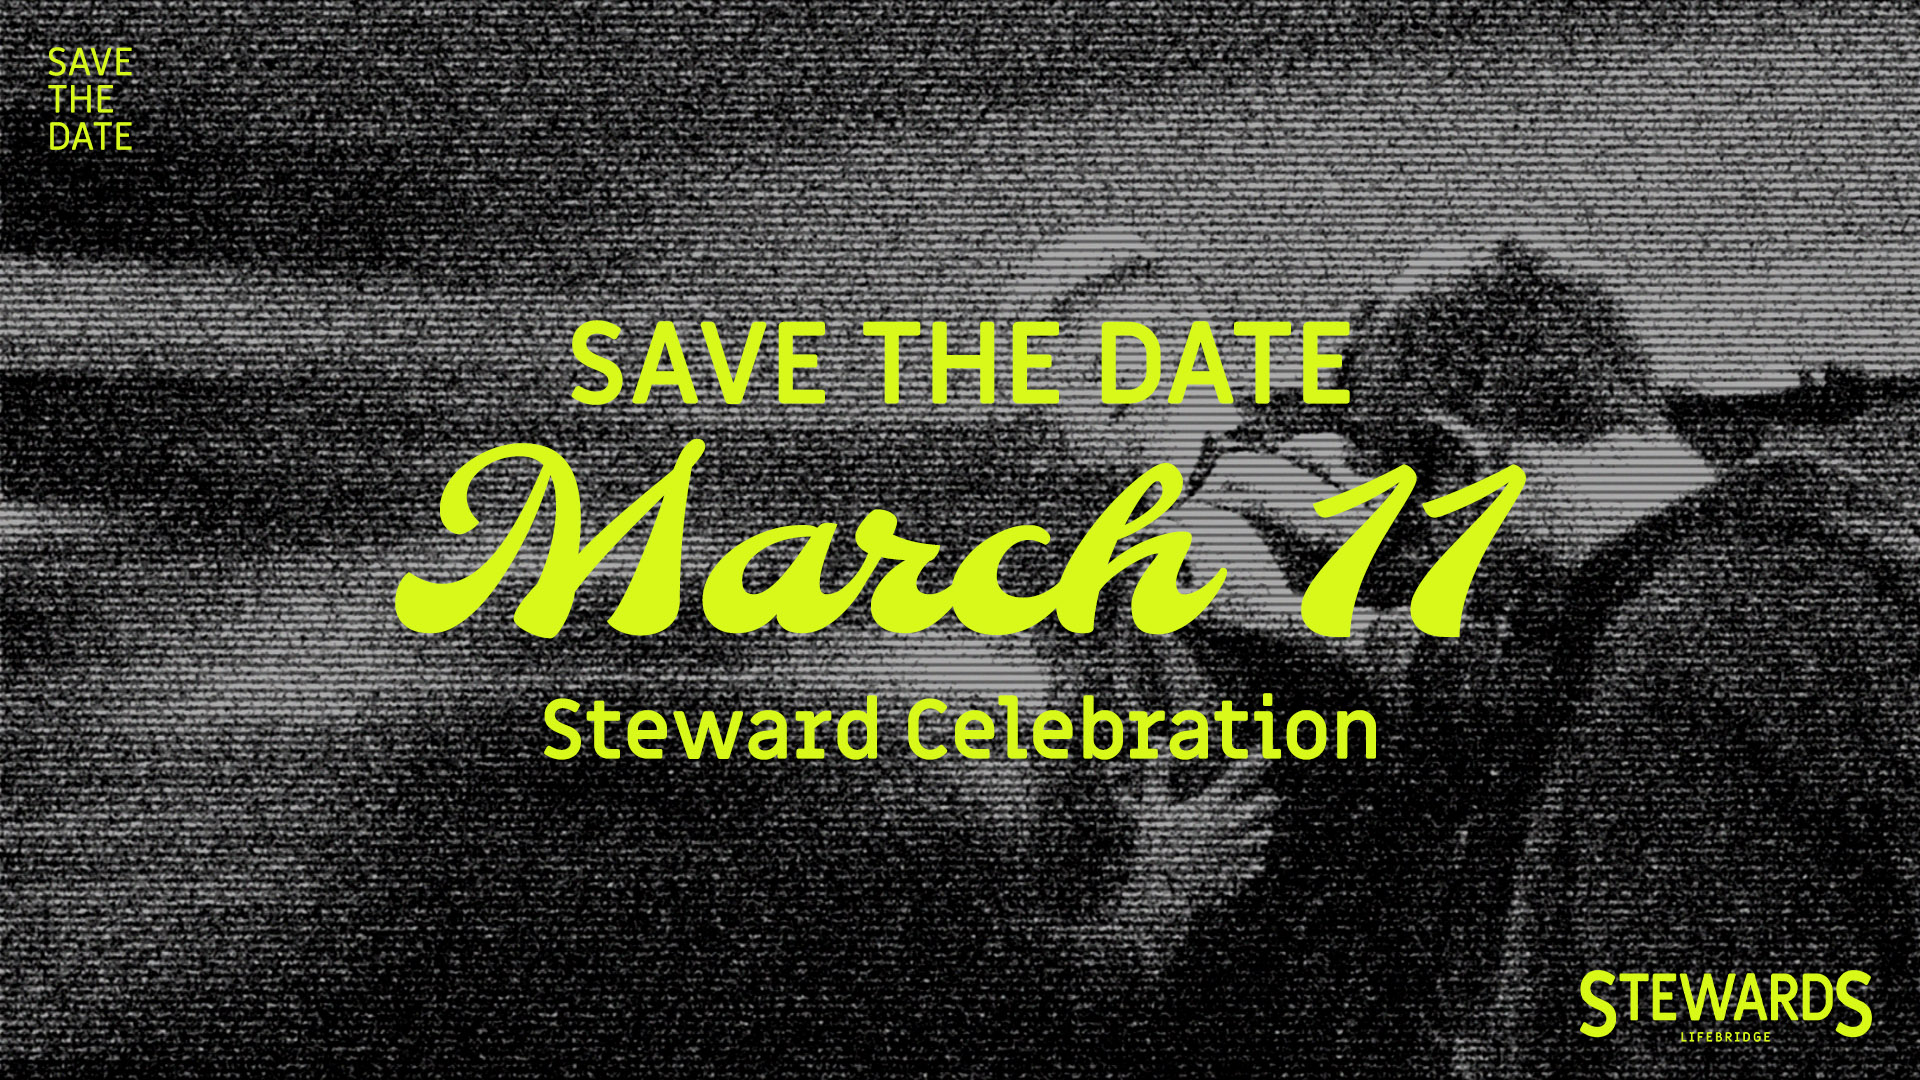 Stewards_SavetheDate_Slide_March11_Website